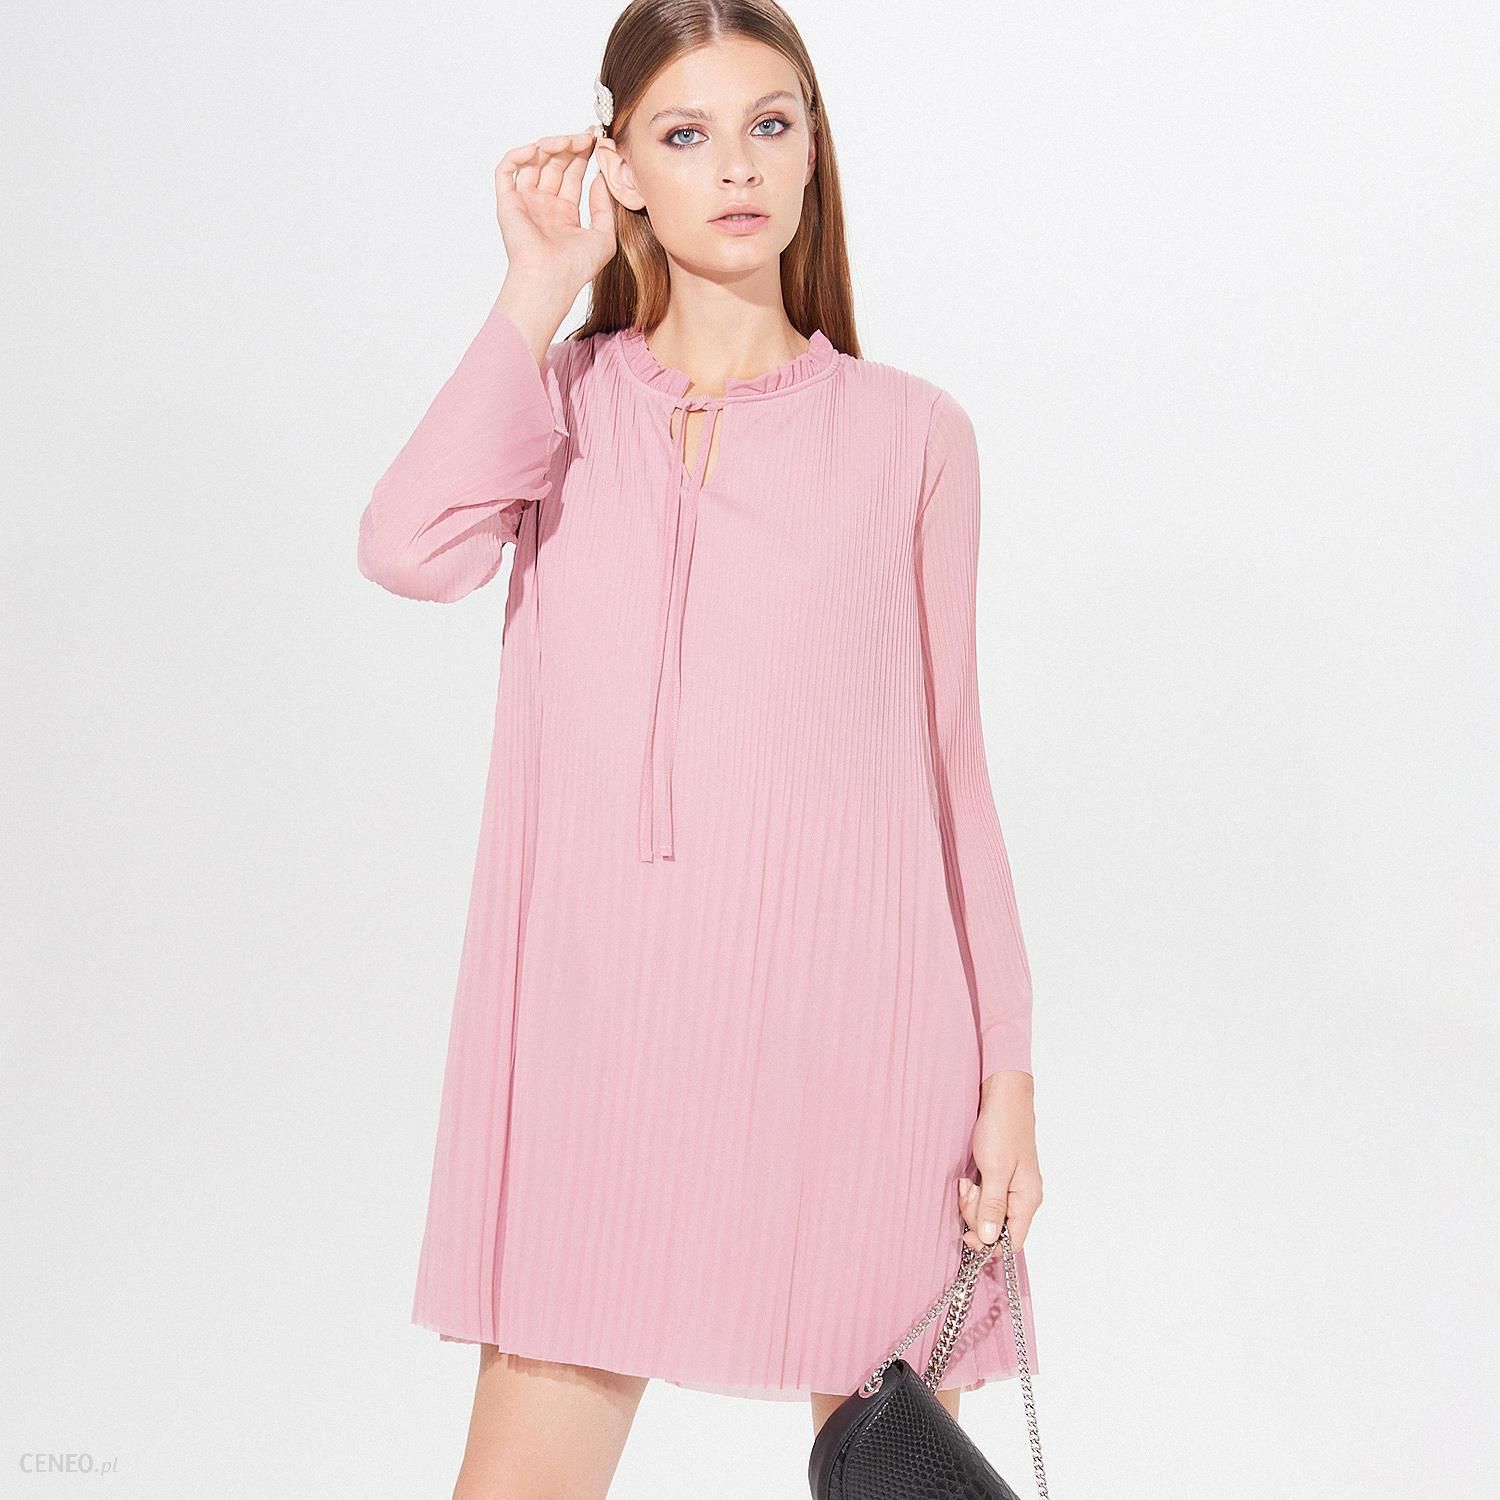 Mohito - Plisowana mini sukienka - Różowy - Ceny i opinie 